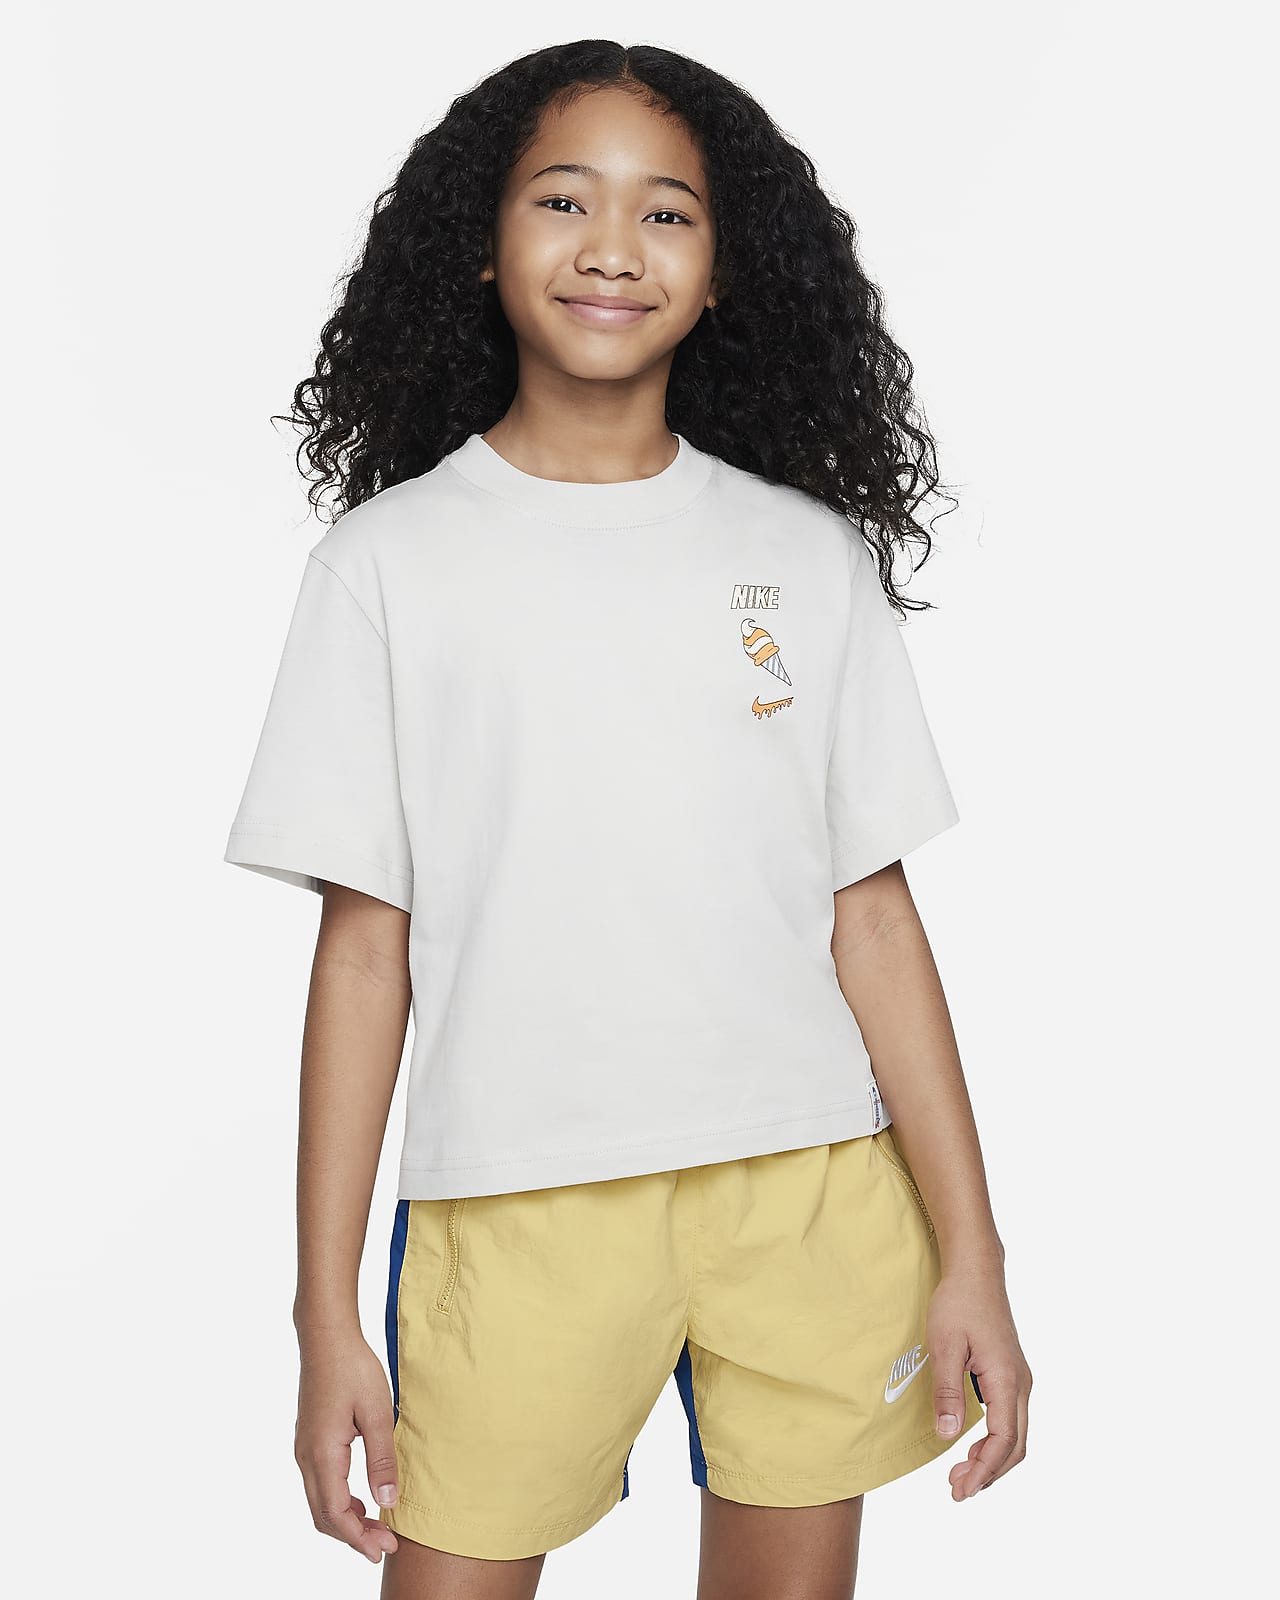 Tričko Nike Sportswear pro větší děti (dívky)